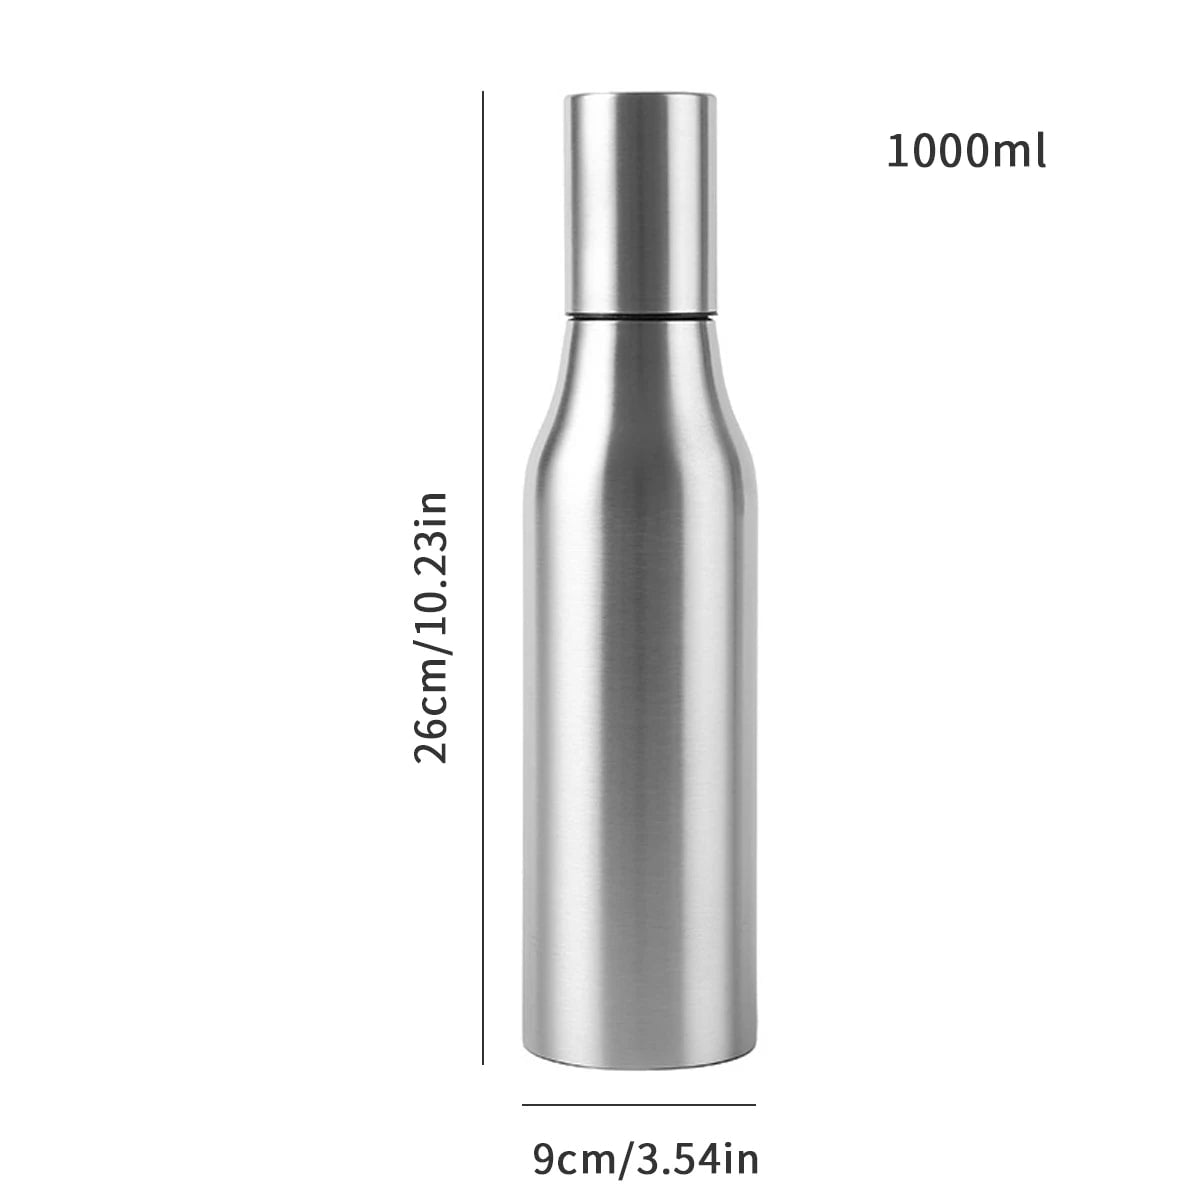 Stainless Steel Olive Oil Dispenser - Leakproof Oil Vinegar Pourer Bottle for Kitchen Accessories 1000ml